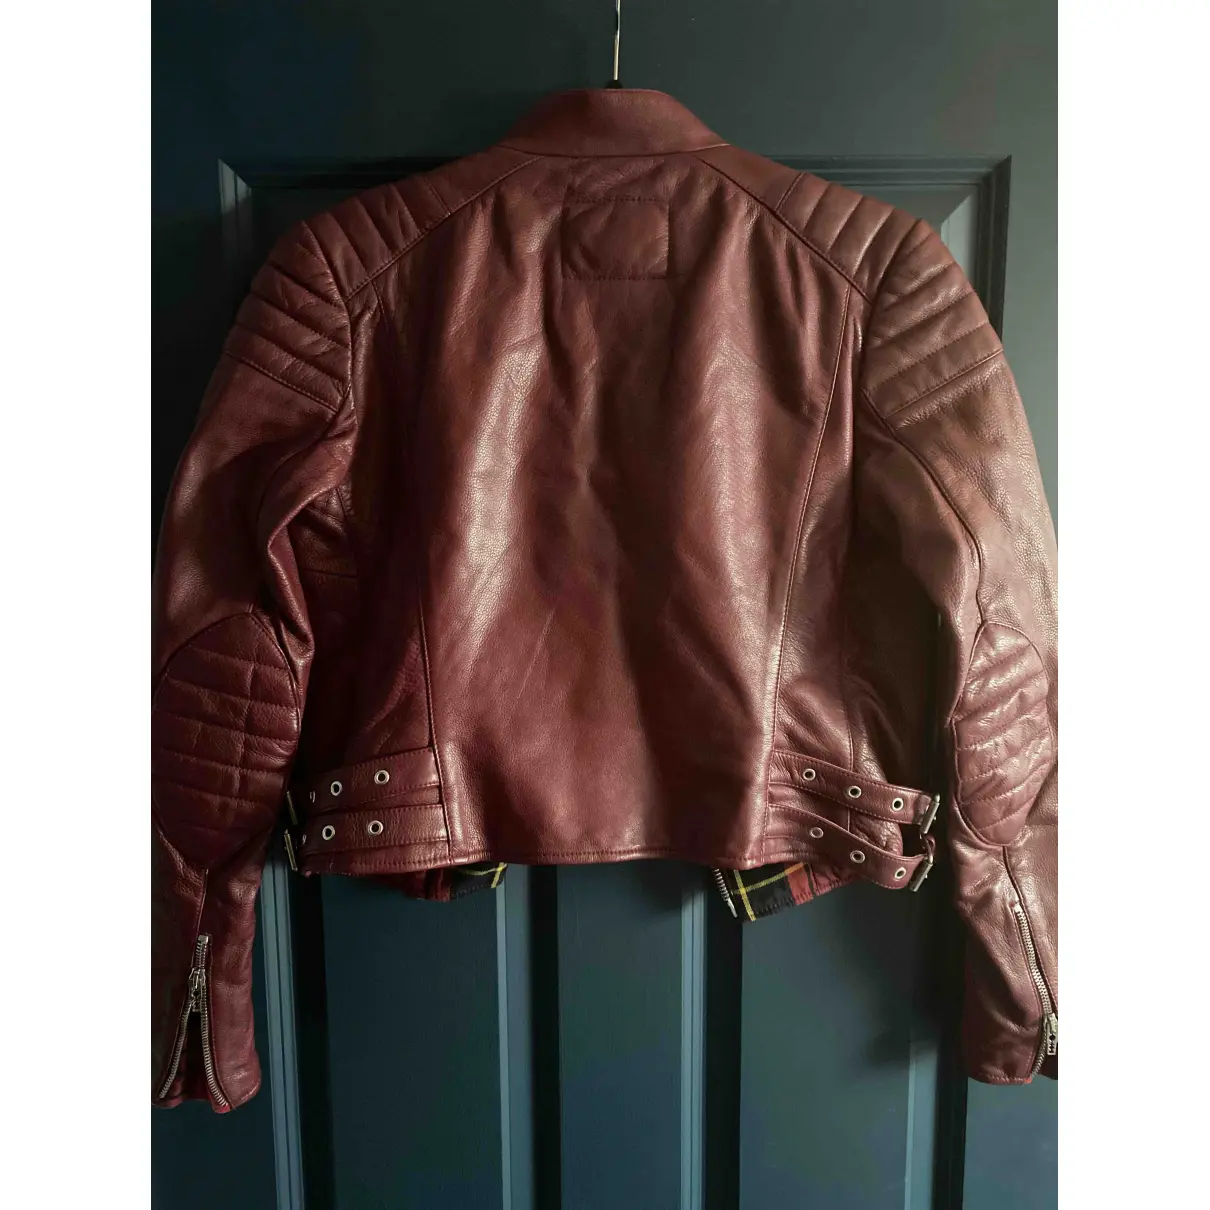 Buy Alexander McQueen Leather biker jacket online